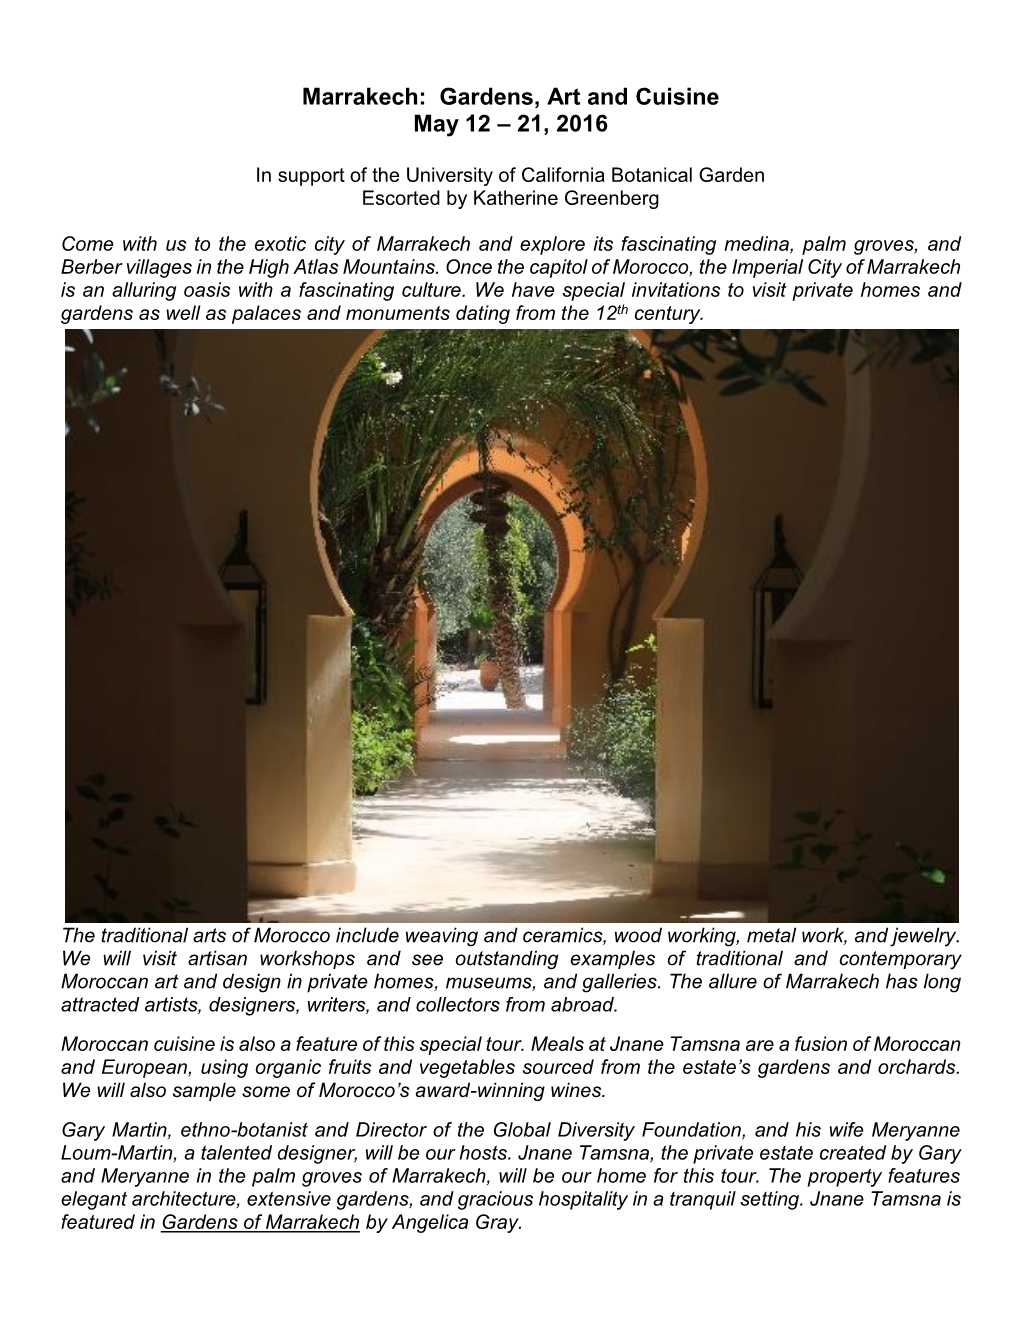 Marrakech: Gardens, Art and Cuisine May 12 – 21, 2016